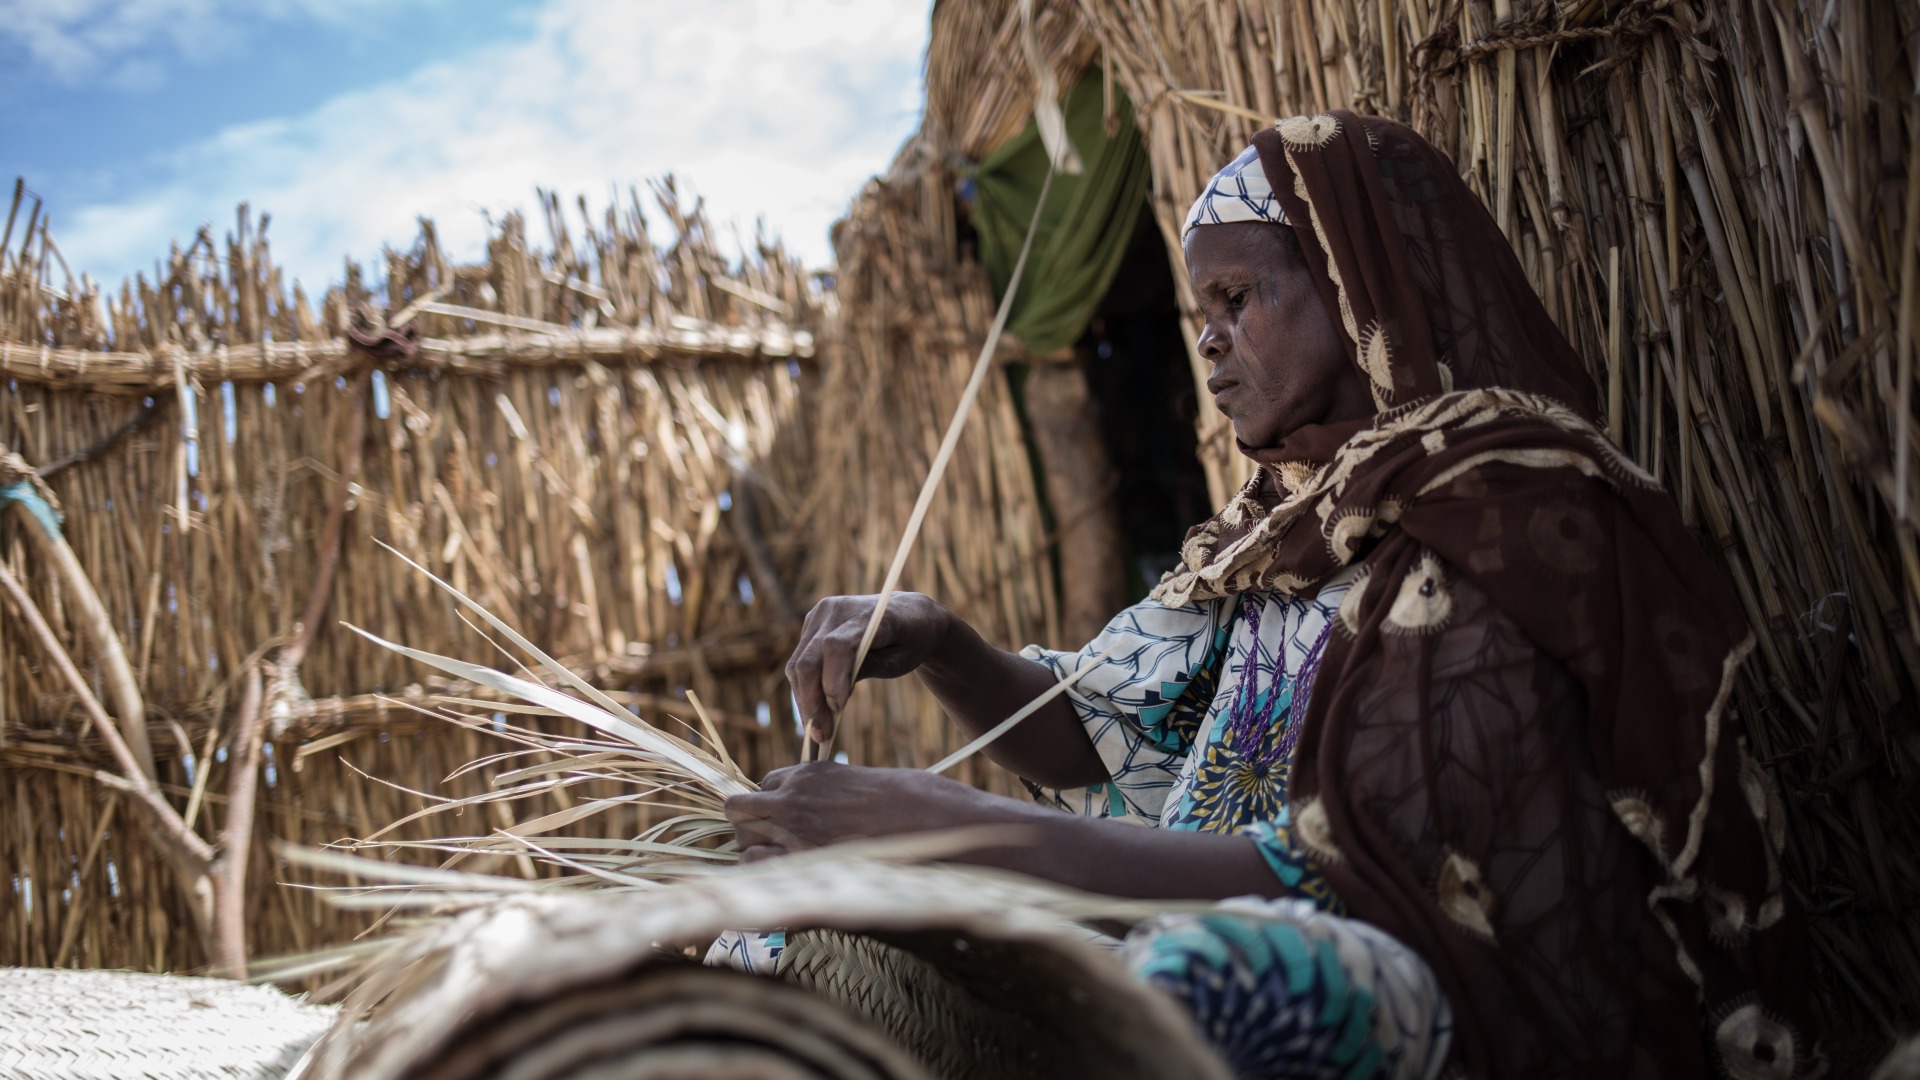 Une femme tresse des paniers au Niger.